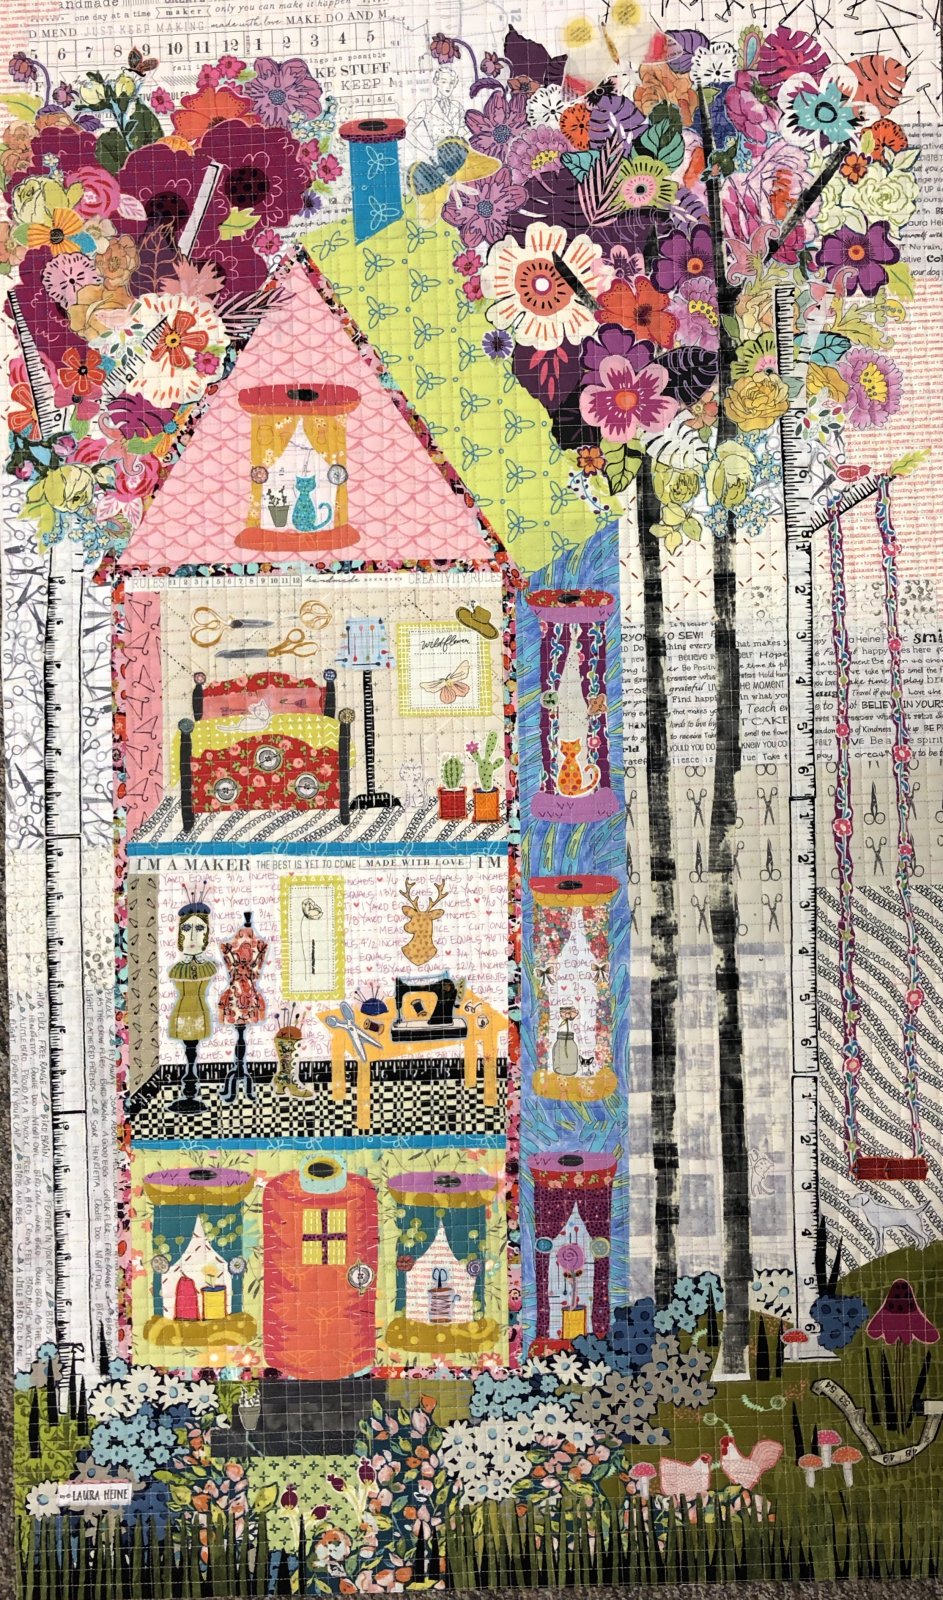 the Quilt Studio Collage Pattern by Laura Heine